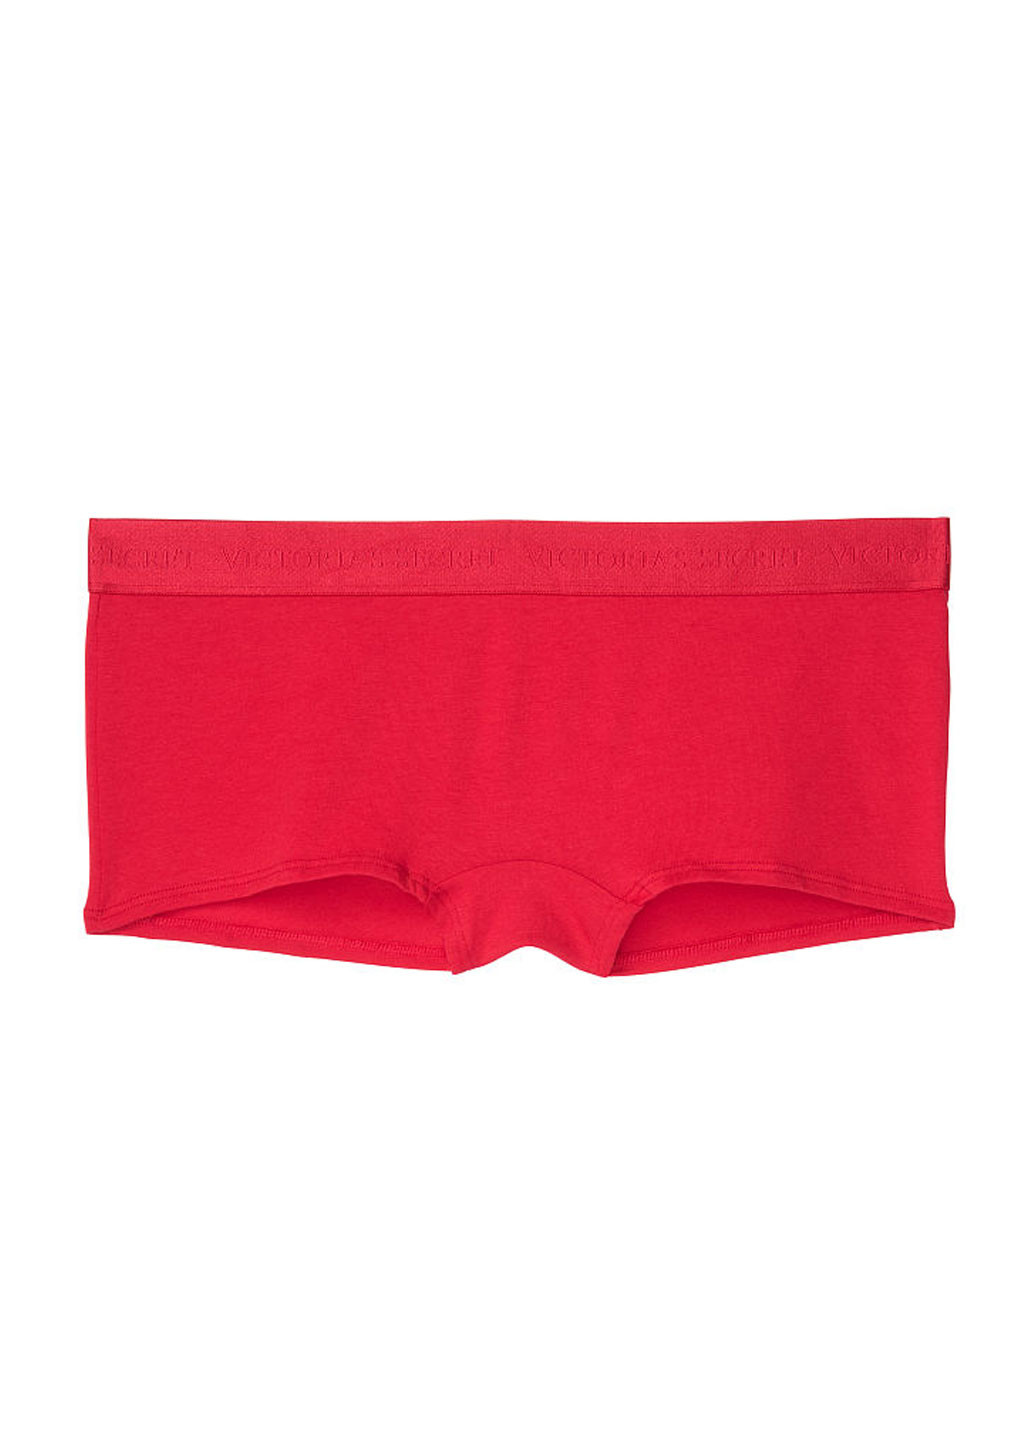 Трусы Victoria's Secret трусики-шорты меланжи красные повседневные трикотаж, хлопок